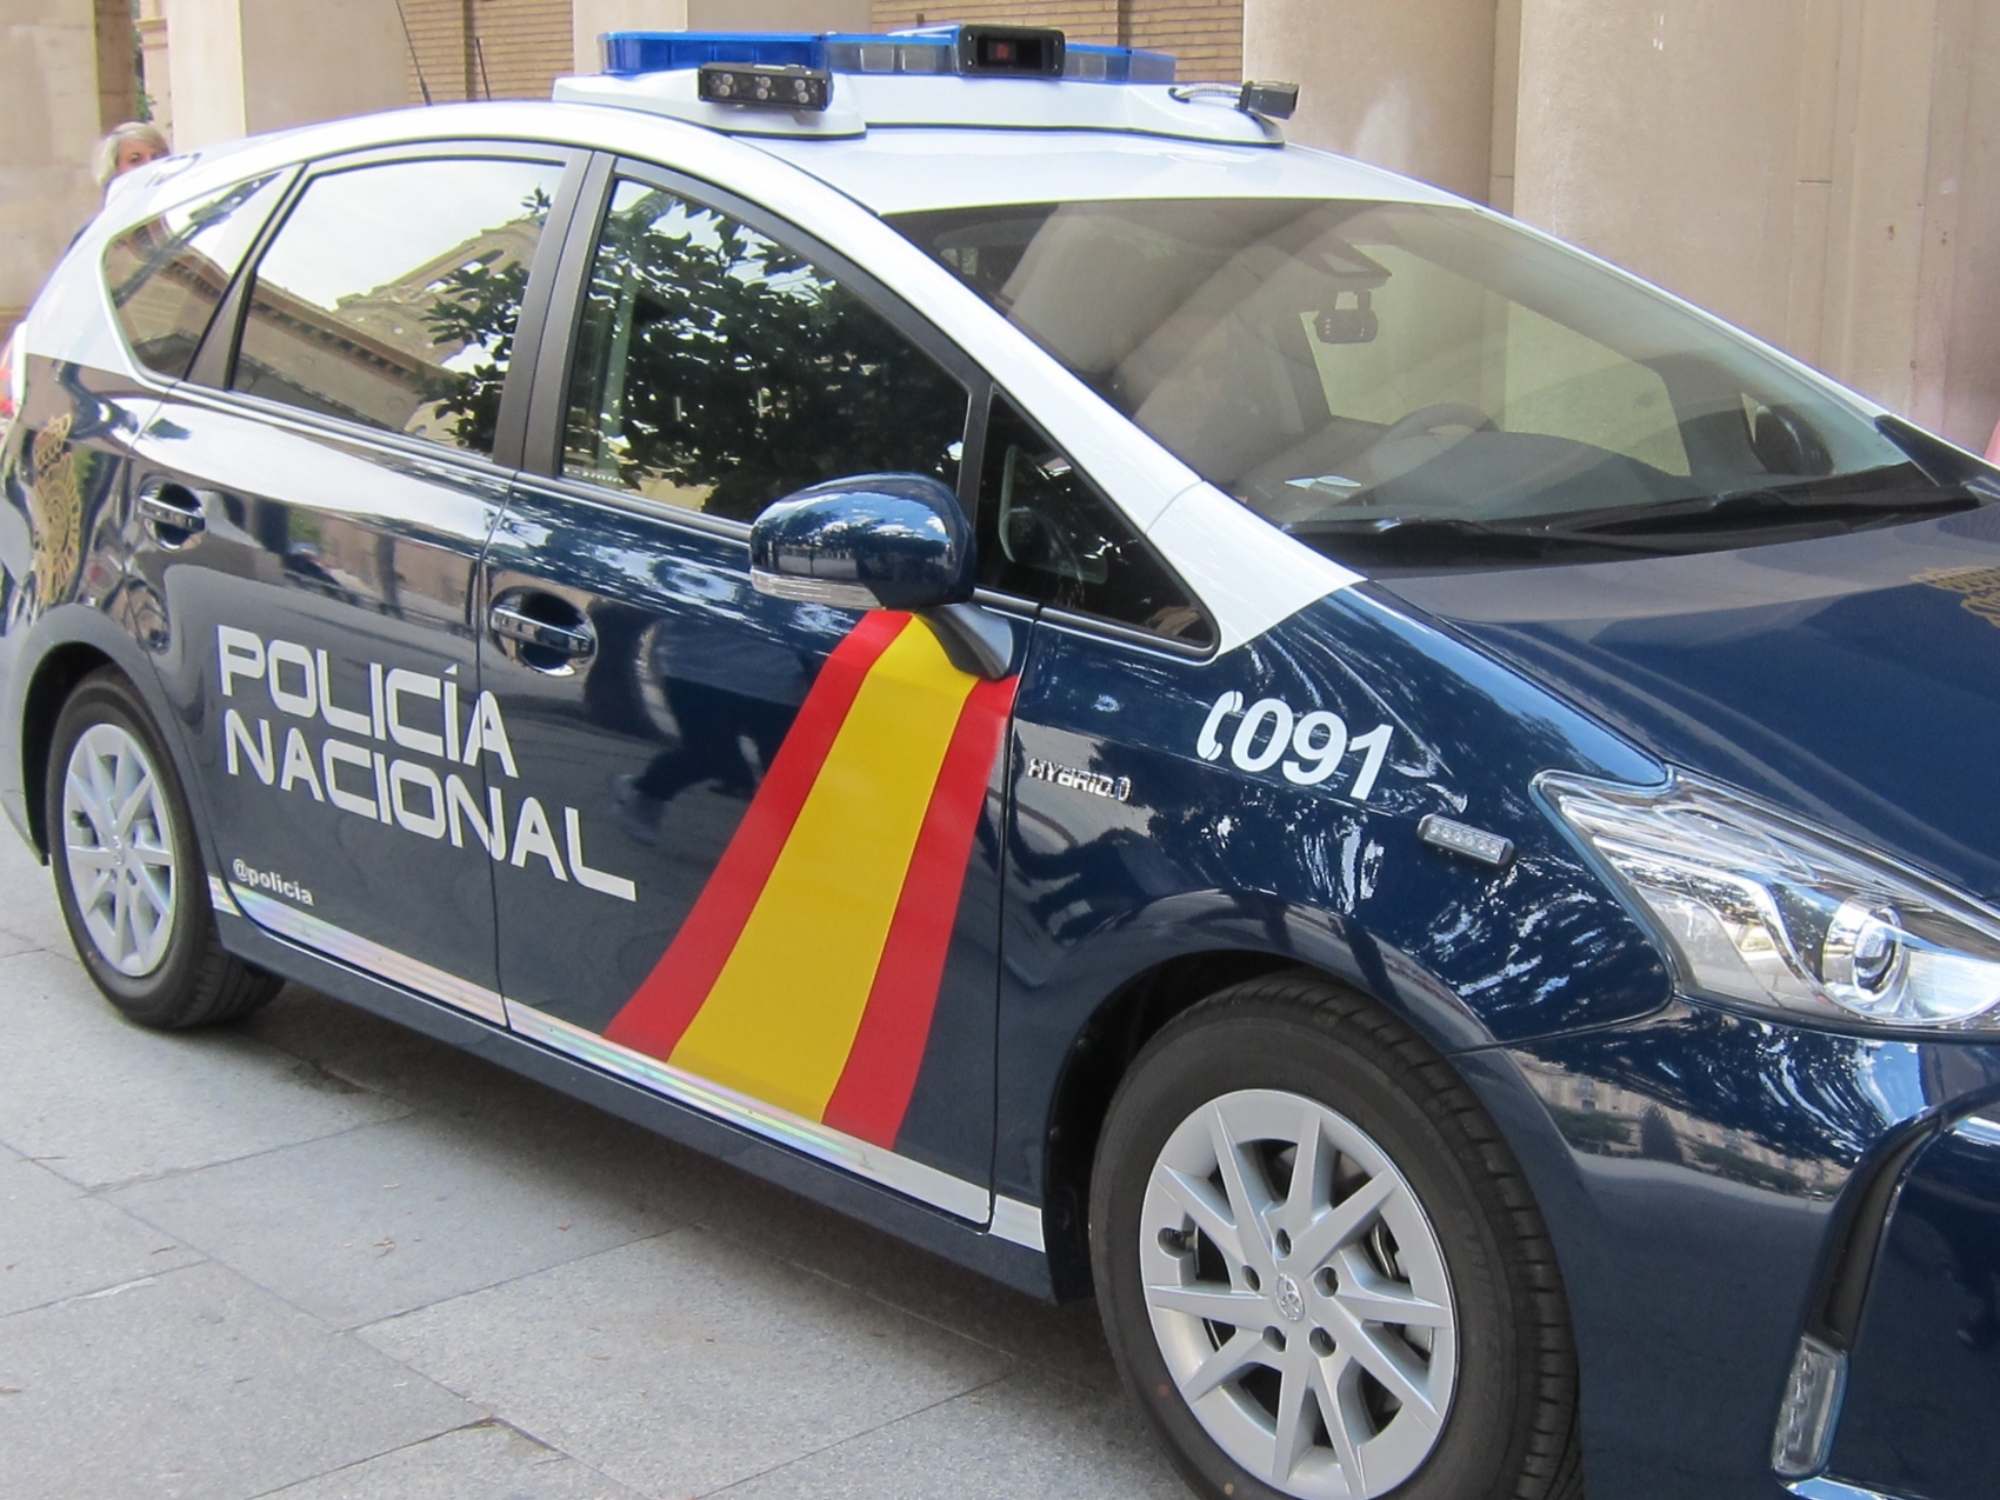 Detenido en Castellón para abusar sexualmente de su sobrina de 6 años: la abuela intentaba encubrirlo